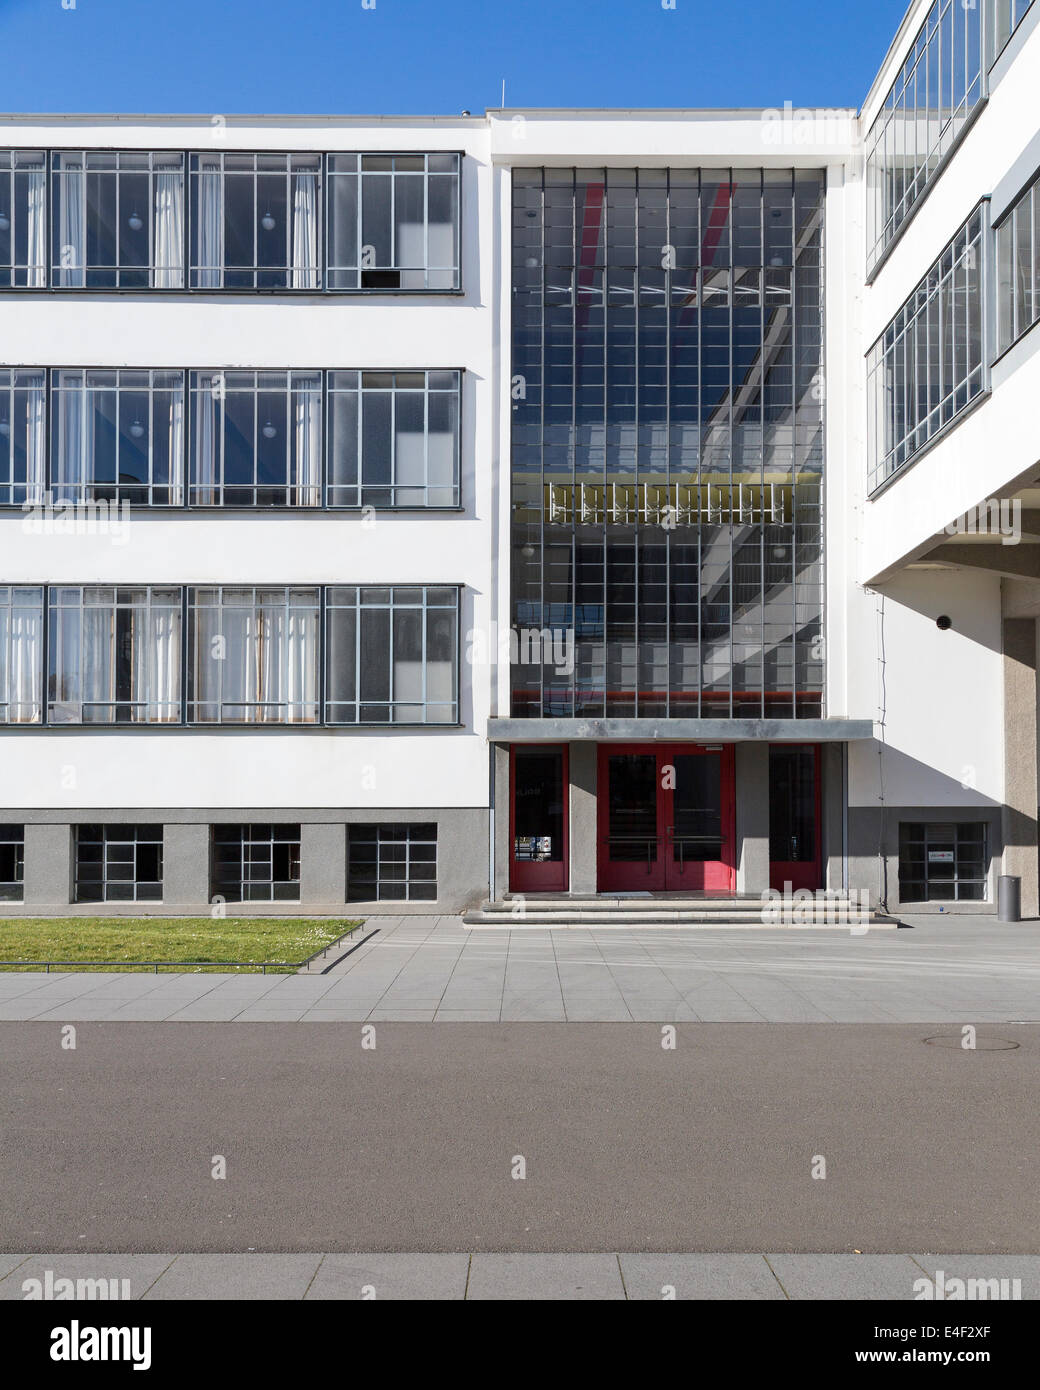 Impressionen von der Staatliches Bauhaus, ehemalige Heimat der Designschule, die moderne, in Dessau, Deutschland gegründet. Stockfoto